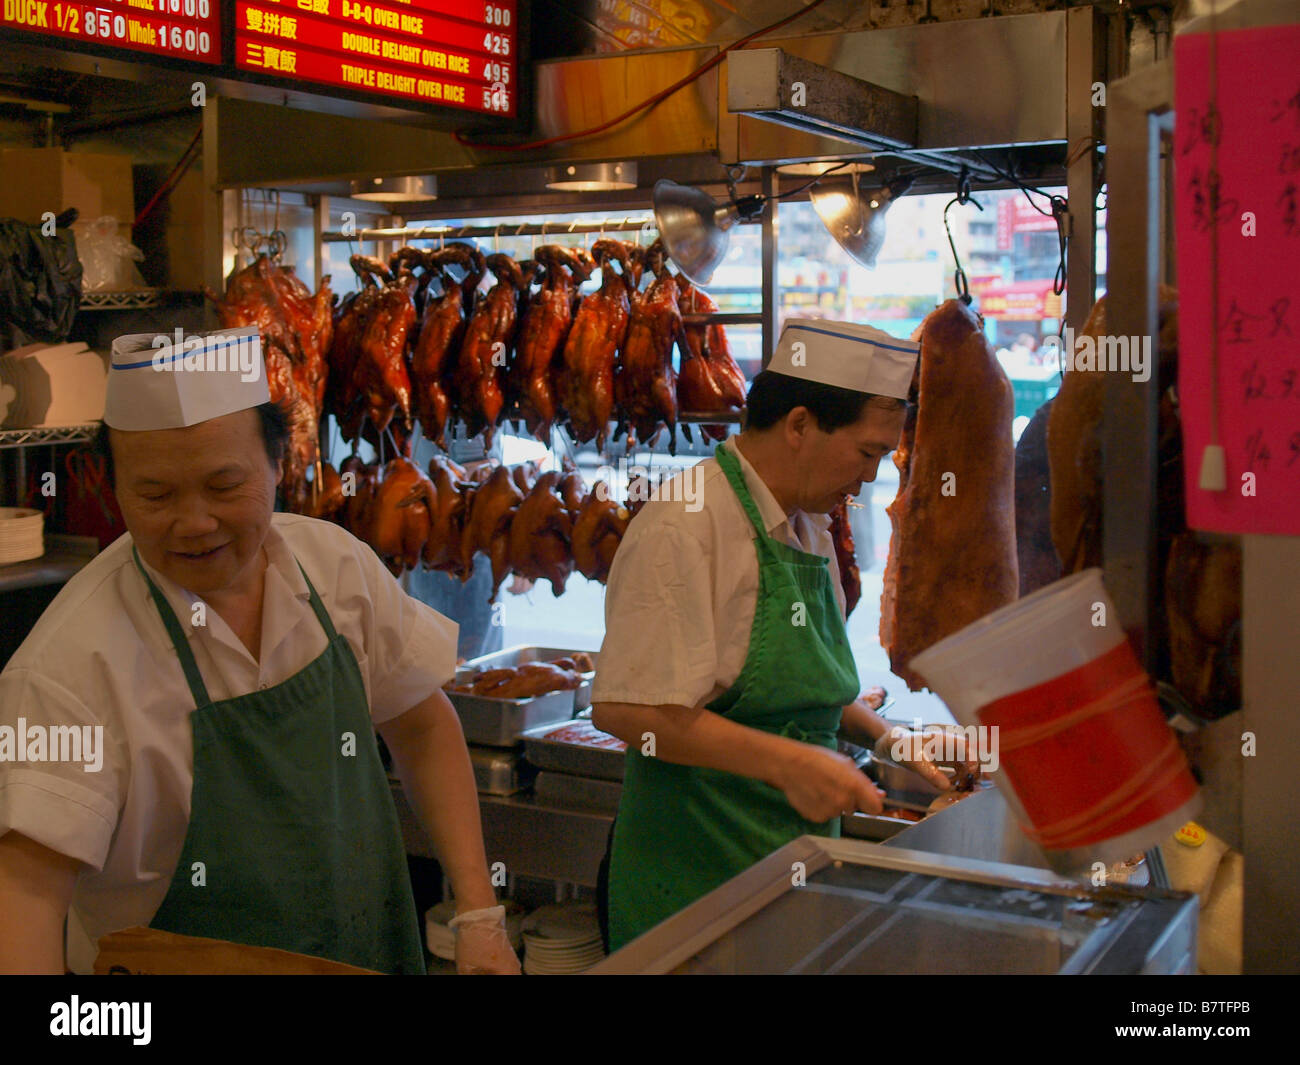 Chefs chinois dans un restaurant chinois dans le quartier chinois de Manhattan entouré de canard rôti, pick, poulet et autres viandes. Banque D'Images